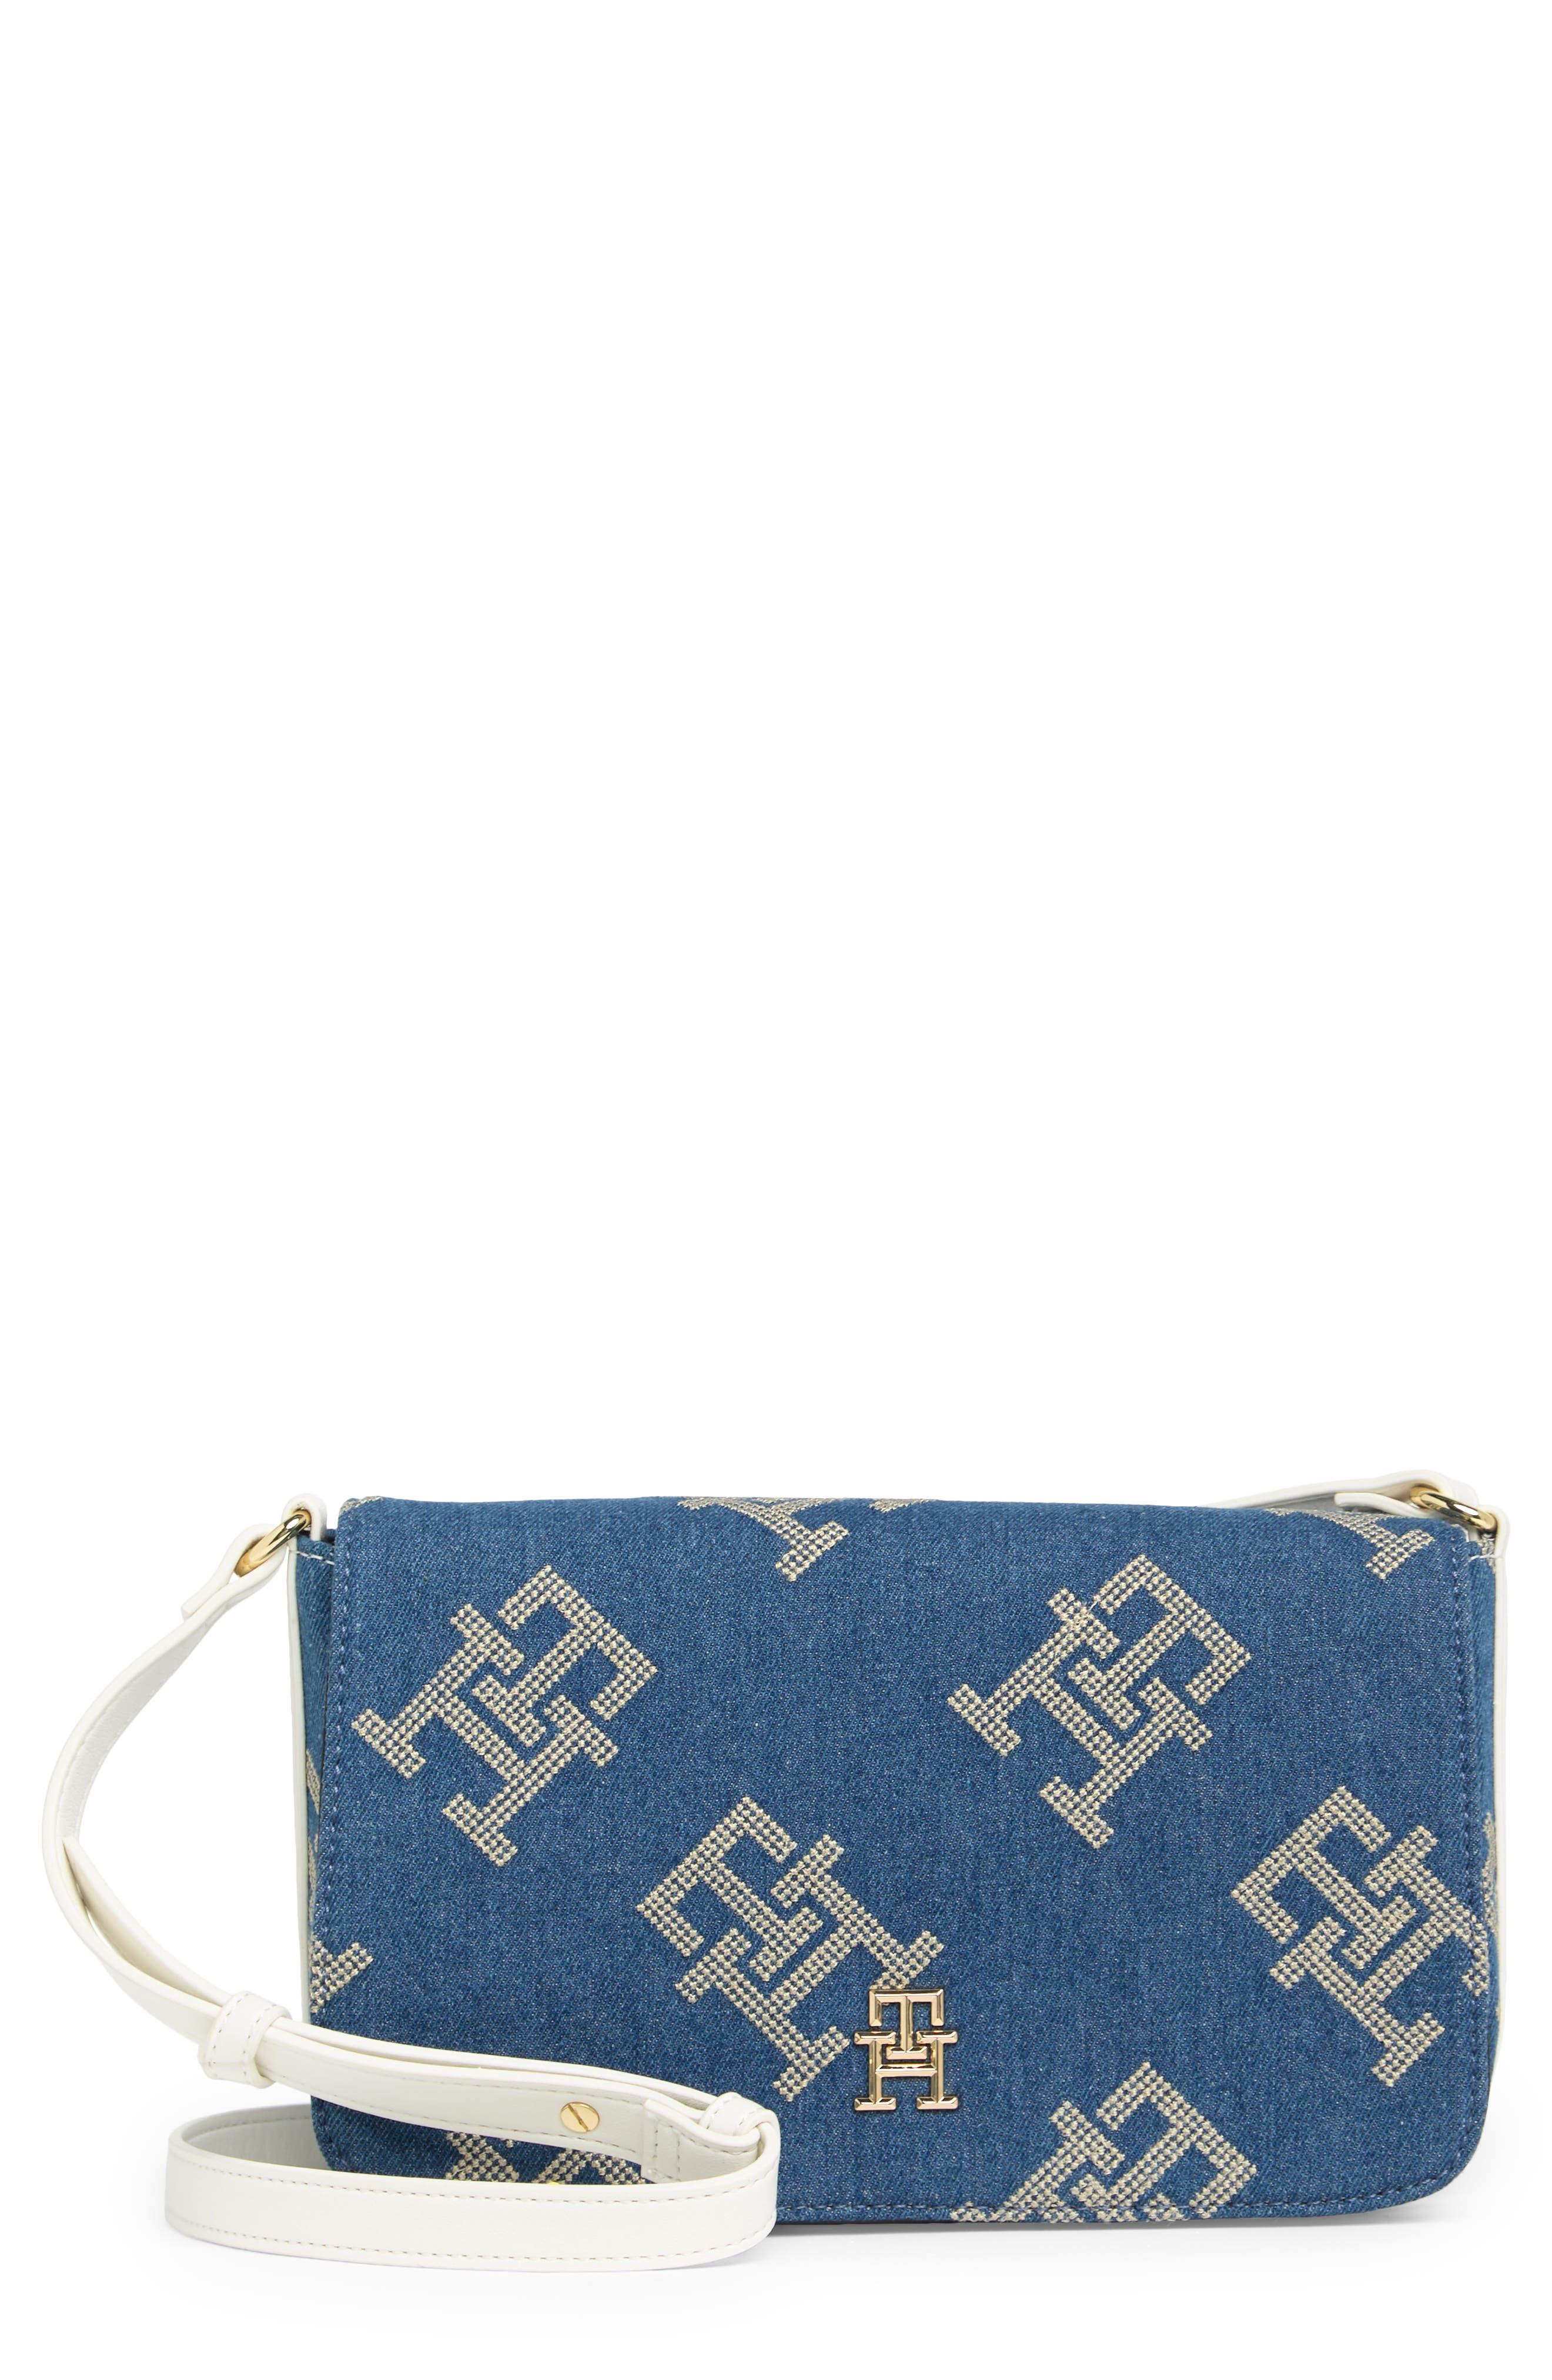 Tommy Hilfiger Darcy Denim Embroidery Crossbody Bag in Blue | Lyst